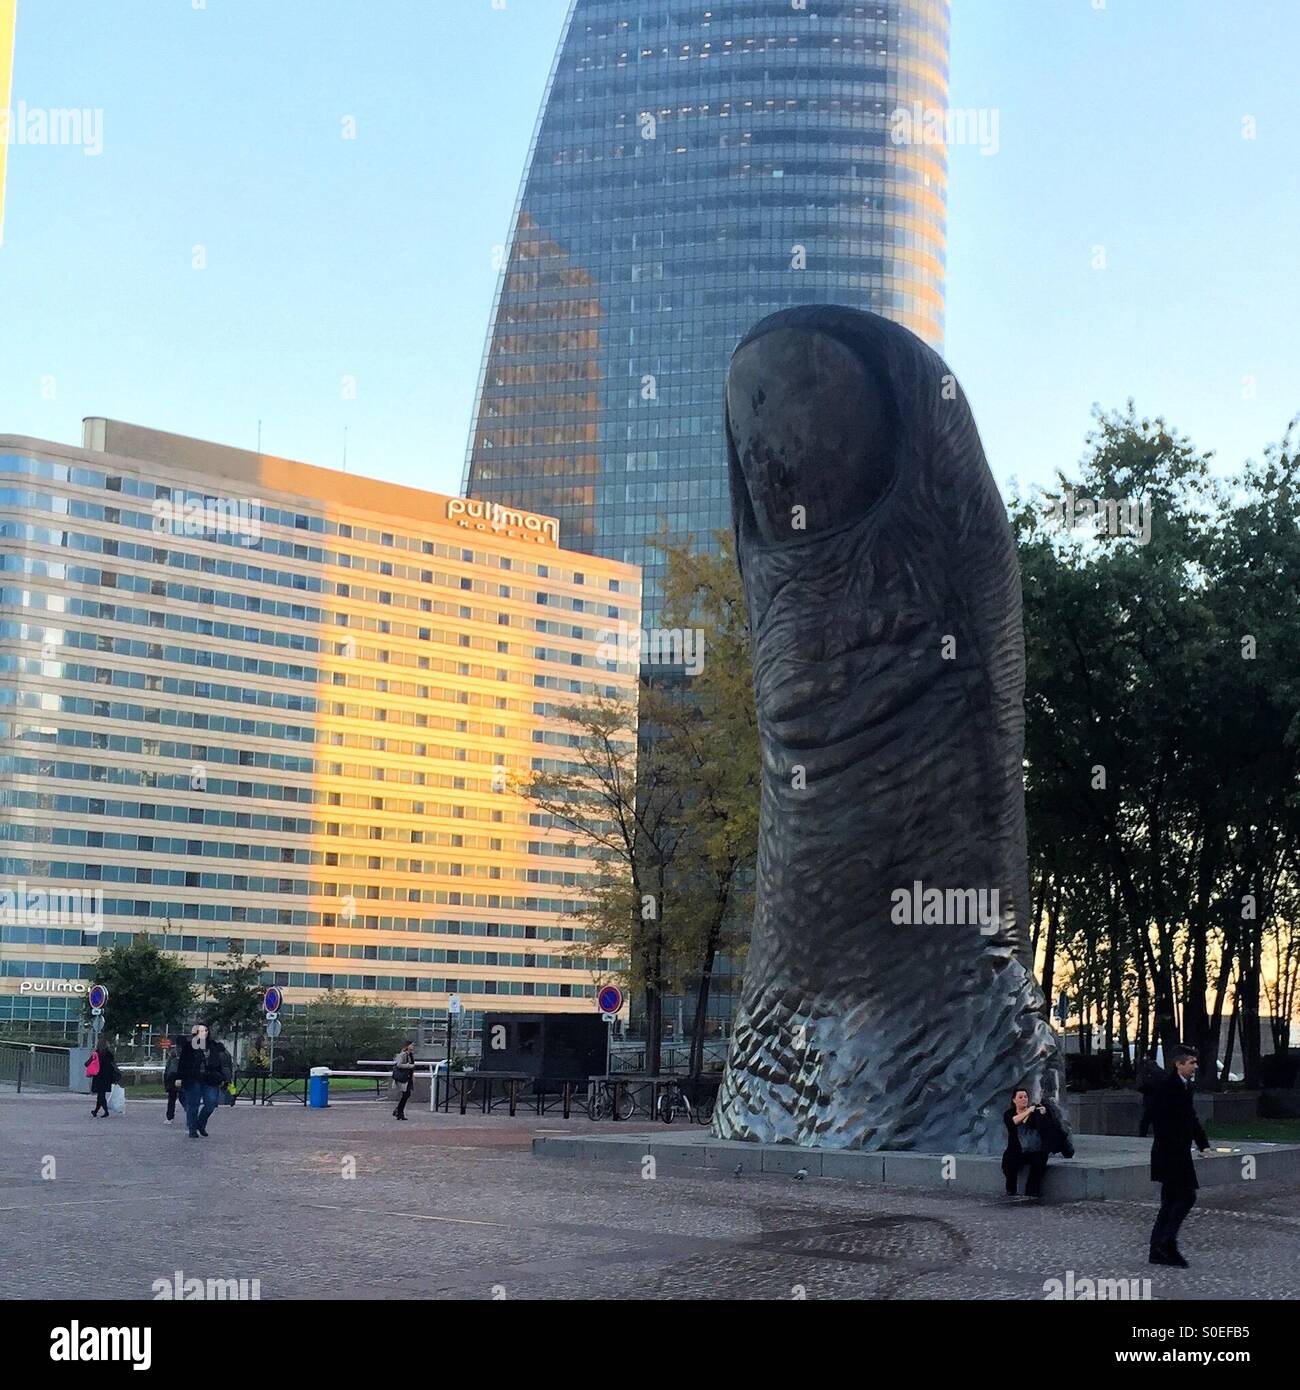 Daumen-Skulptur La Defense Paris, Frankreich Stockfoto